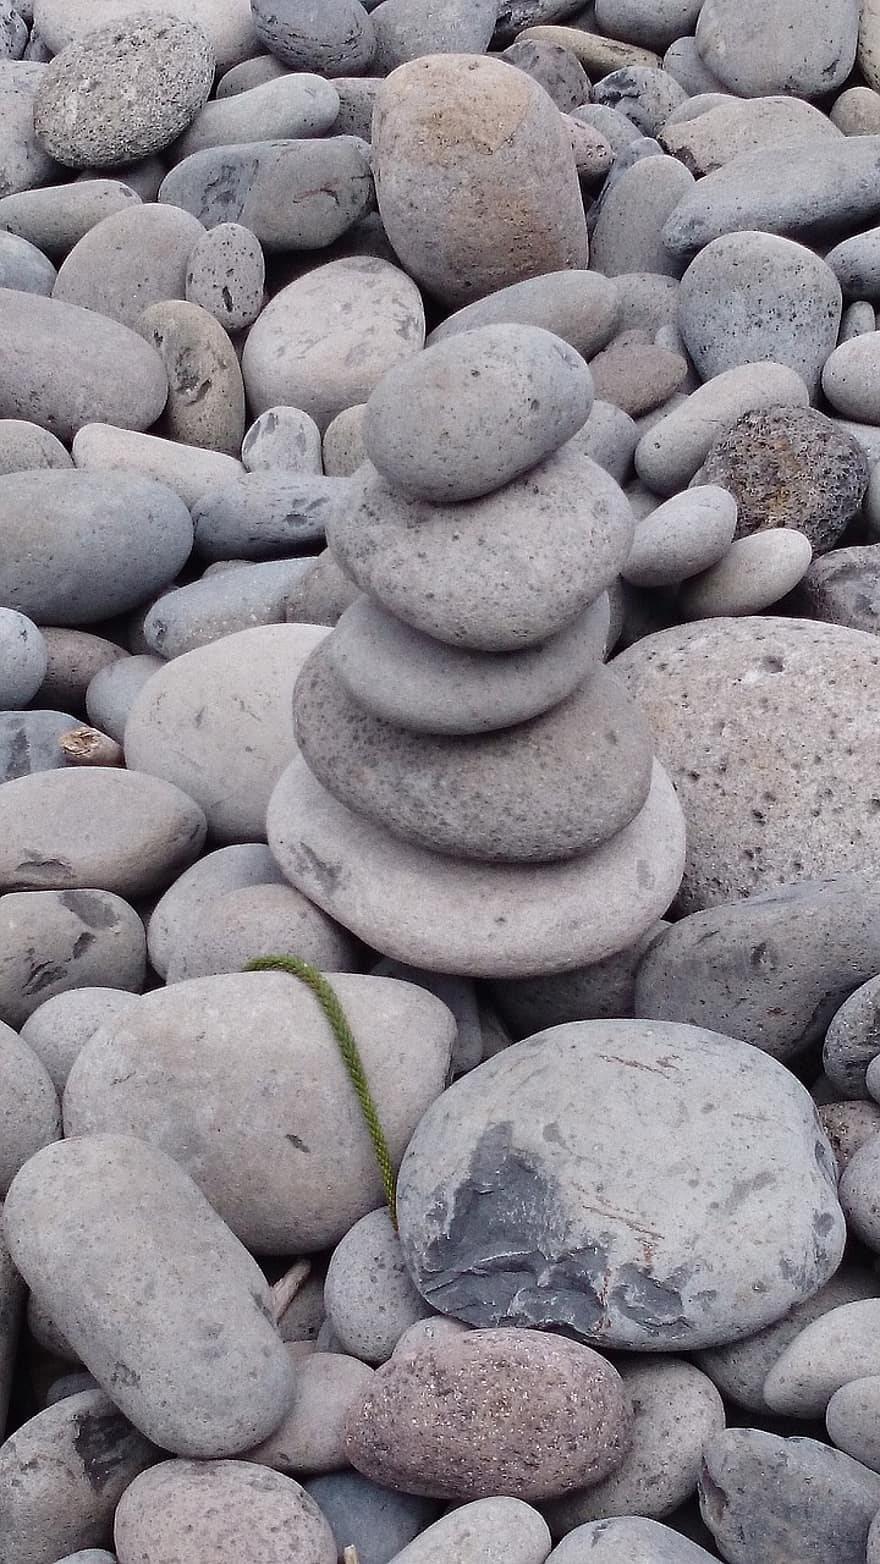 pedras, rochas, equilibrar, seixos, rochas equilibradas, pedras equilibradas, meditação, zen, de praia, atenção plena, espiritualidade